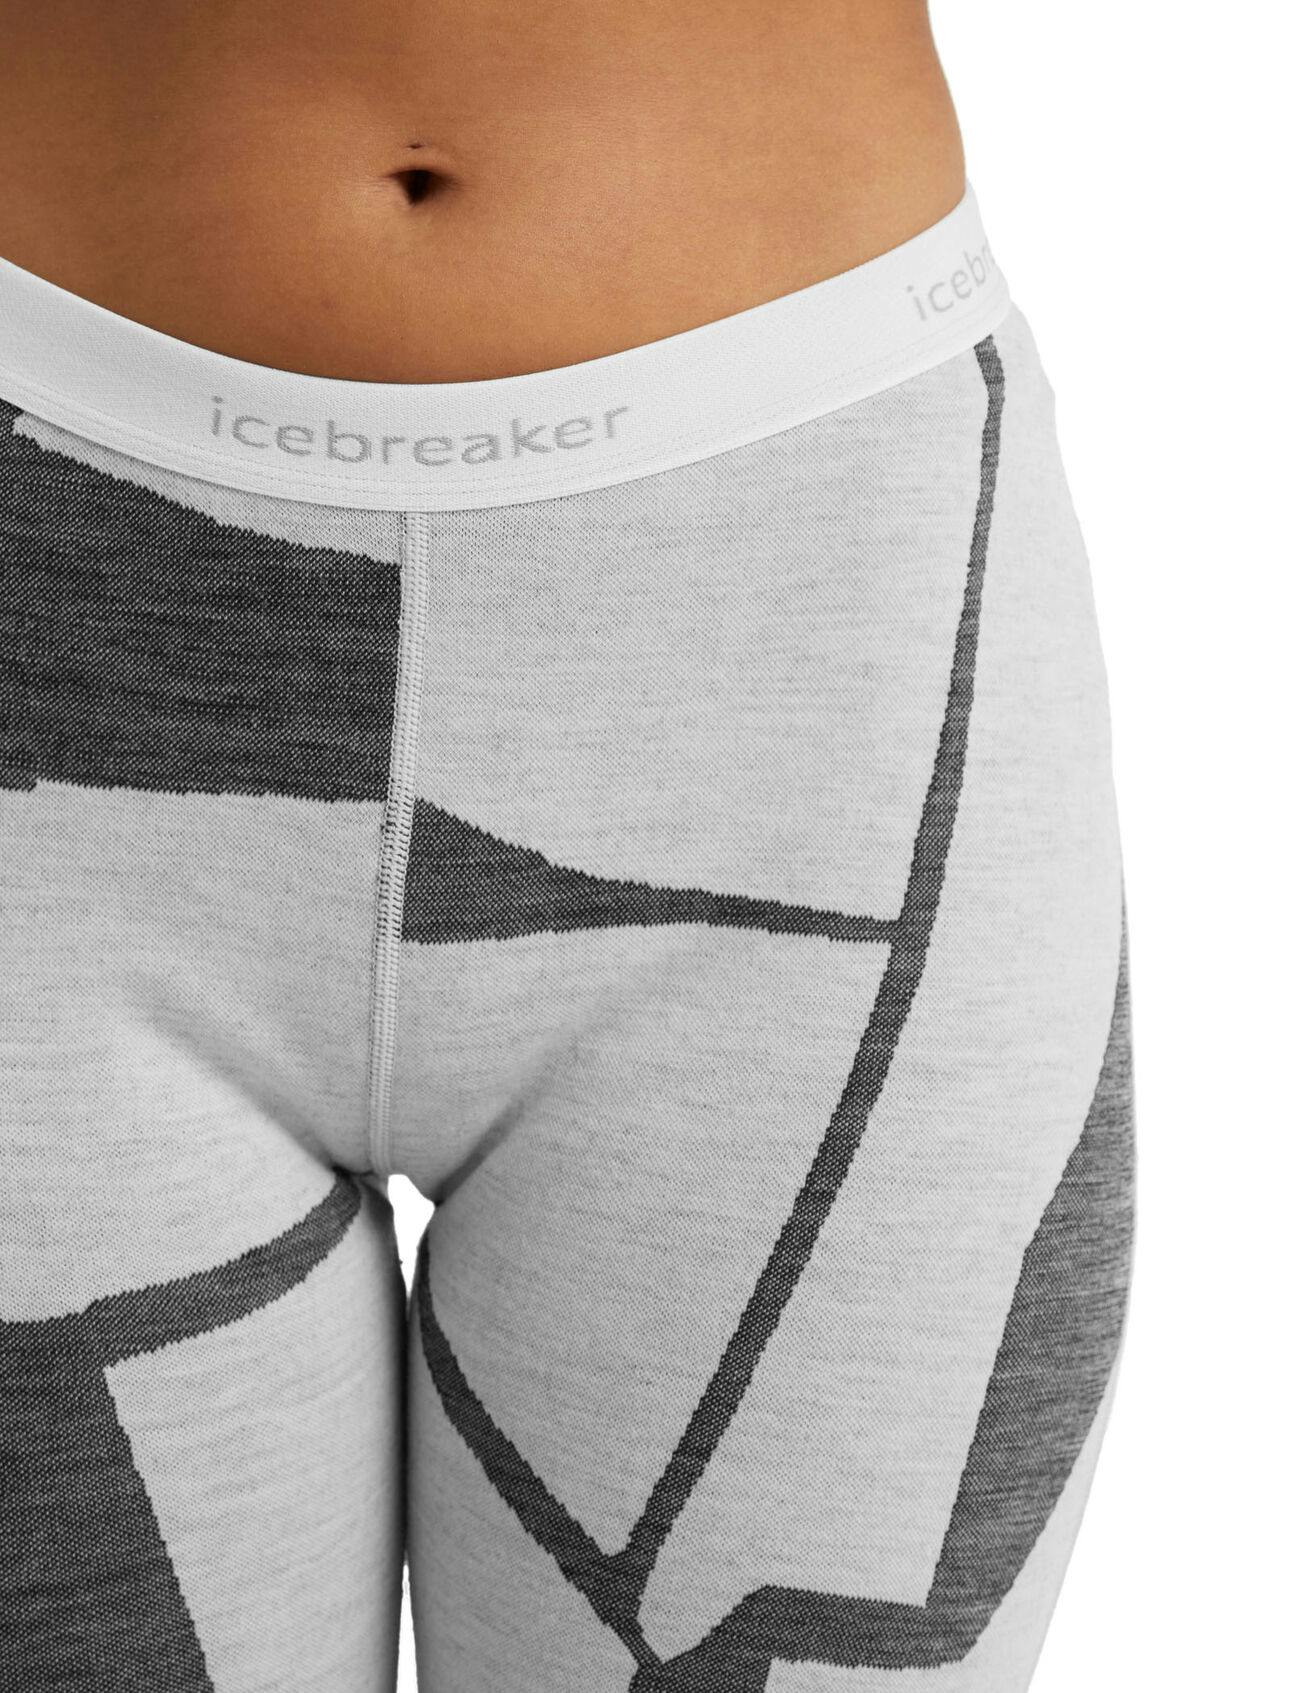 Icebreaker Women's 250 Vertex Leggings Fractured Landscapes